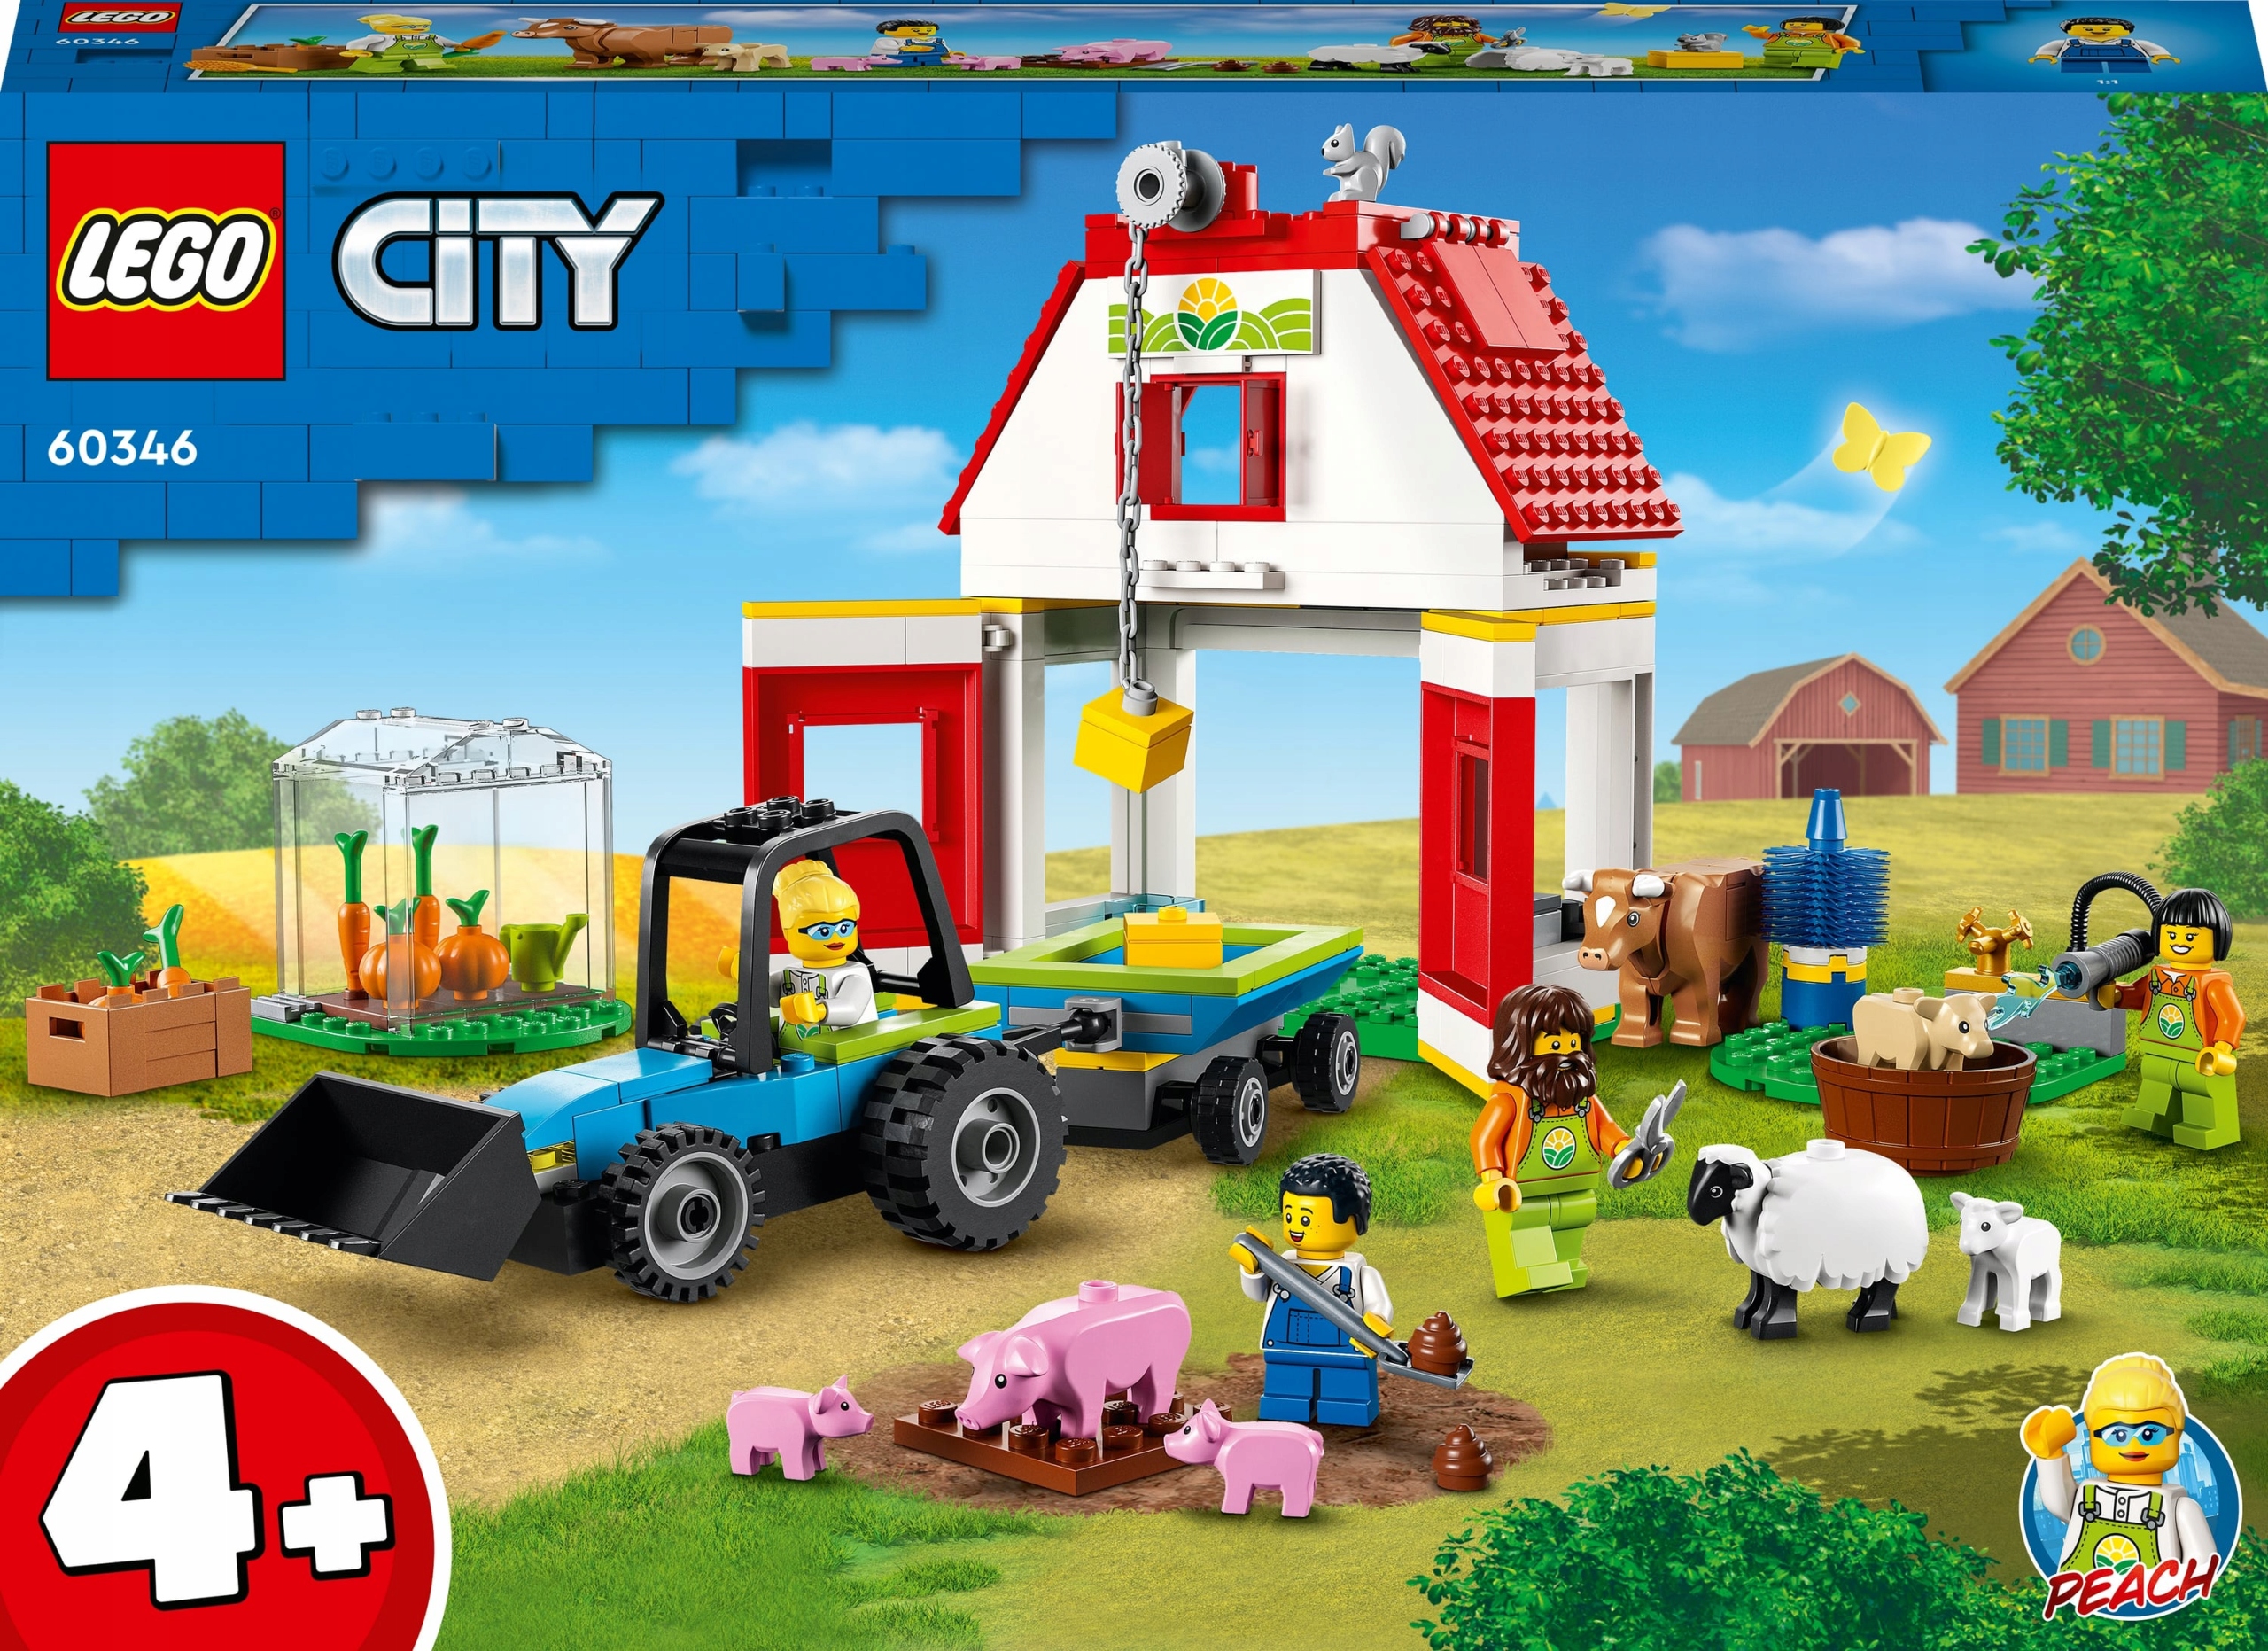 Lego. City. Stodoła i zwierzęta gospodarskie 4+